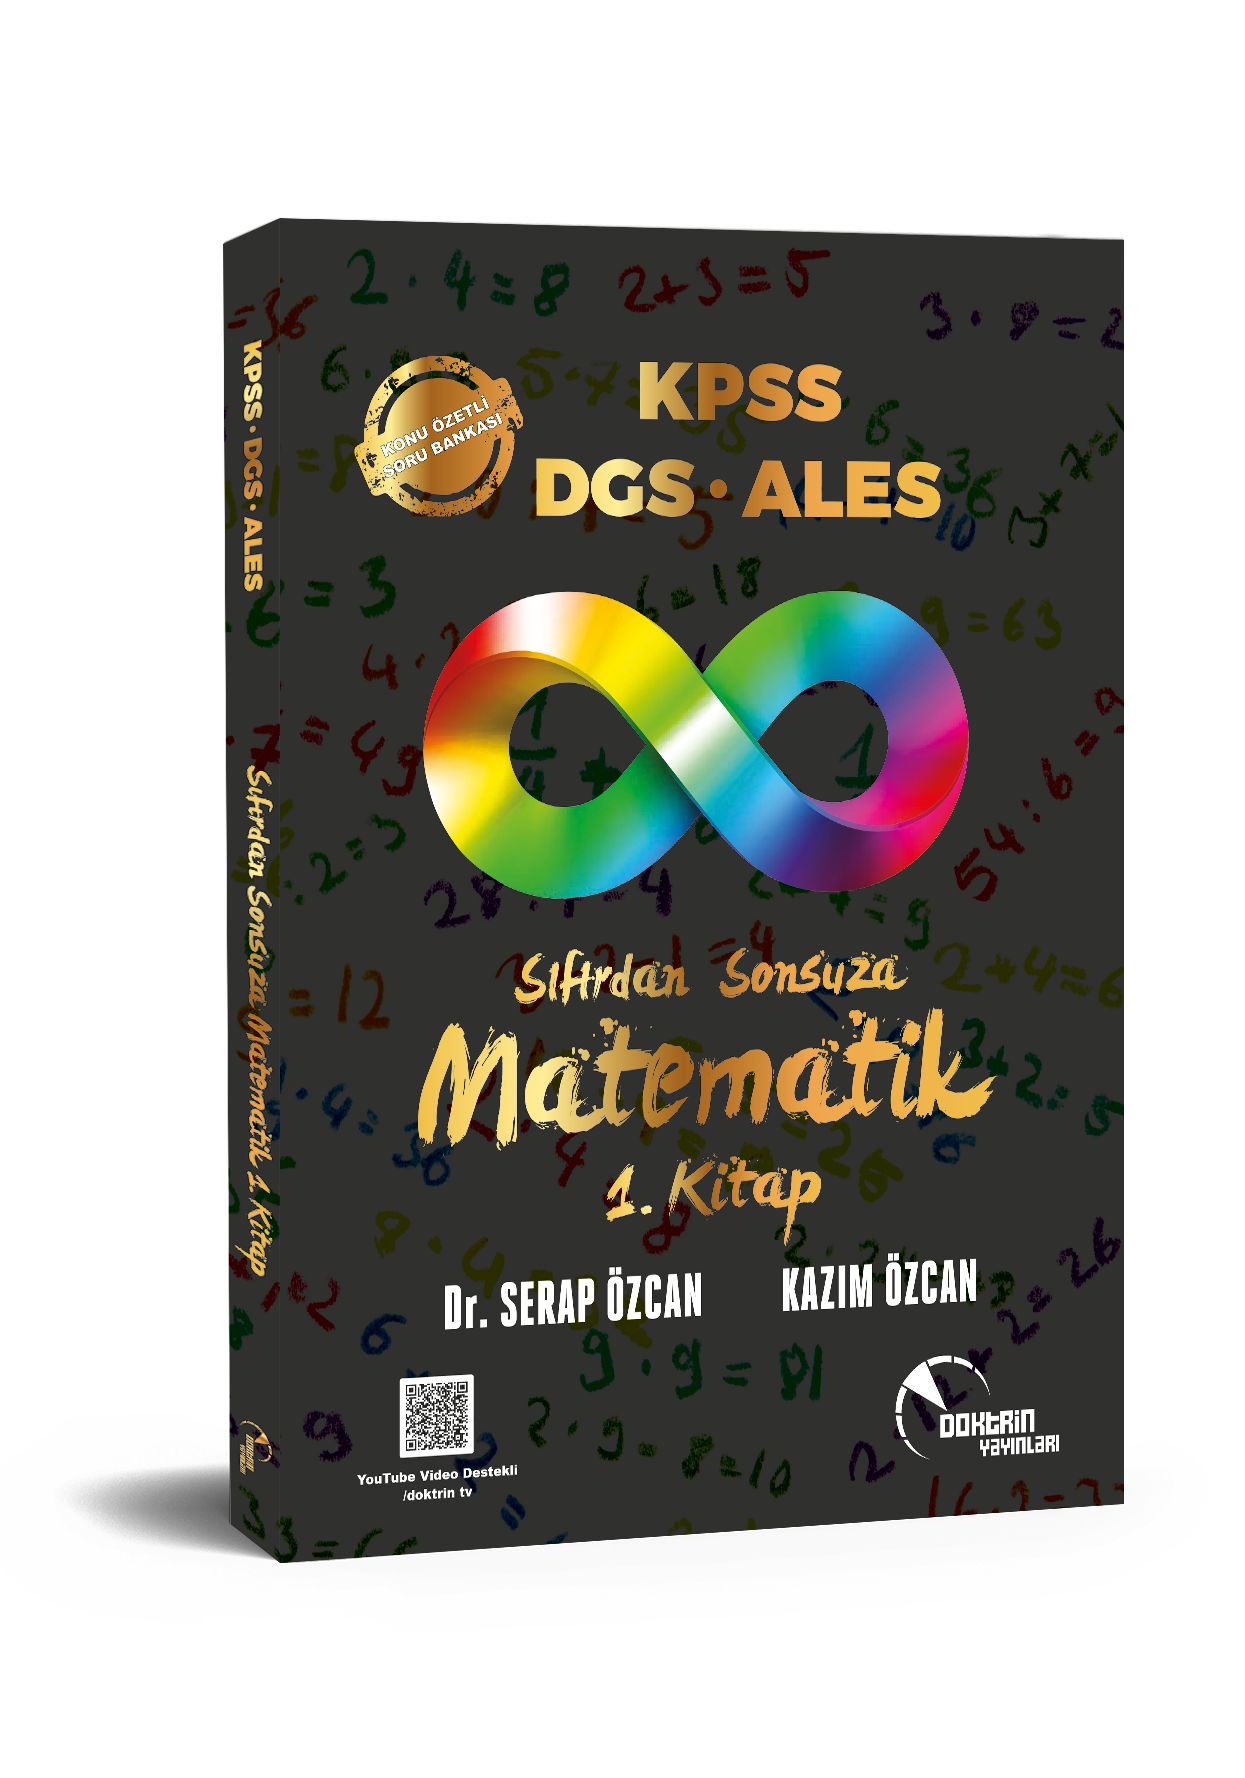 DGS Sıfırdan Sonsuza Matematik (1.Kitap) Konu Özetli Soru Bankası